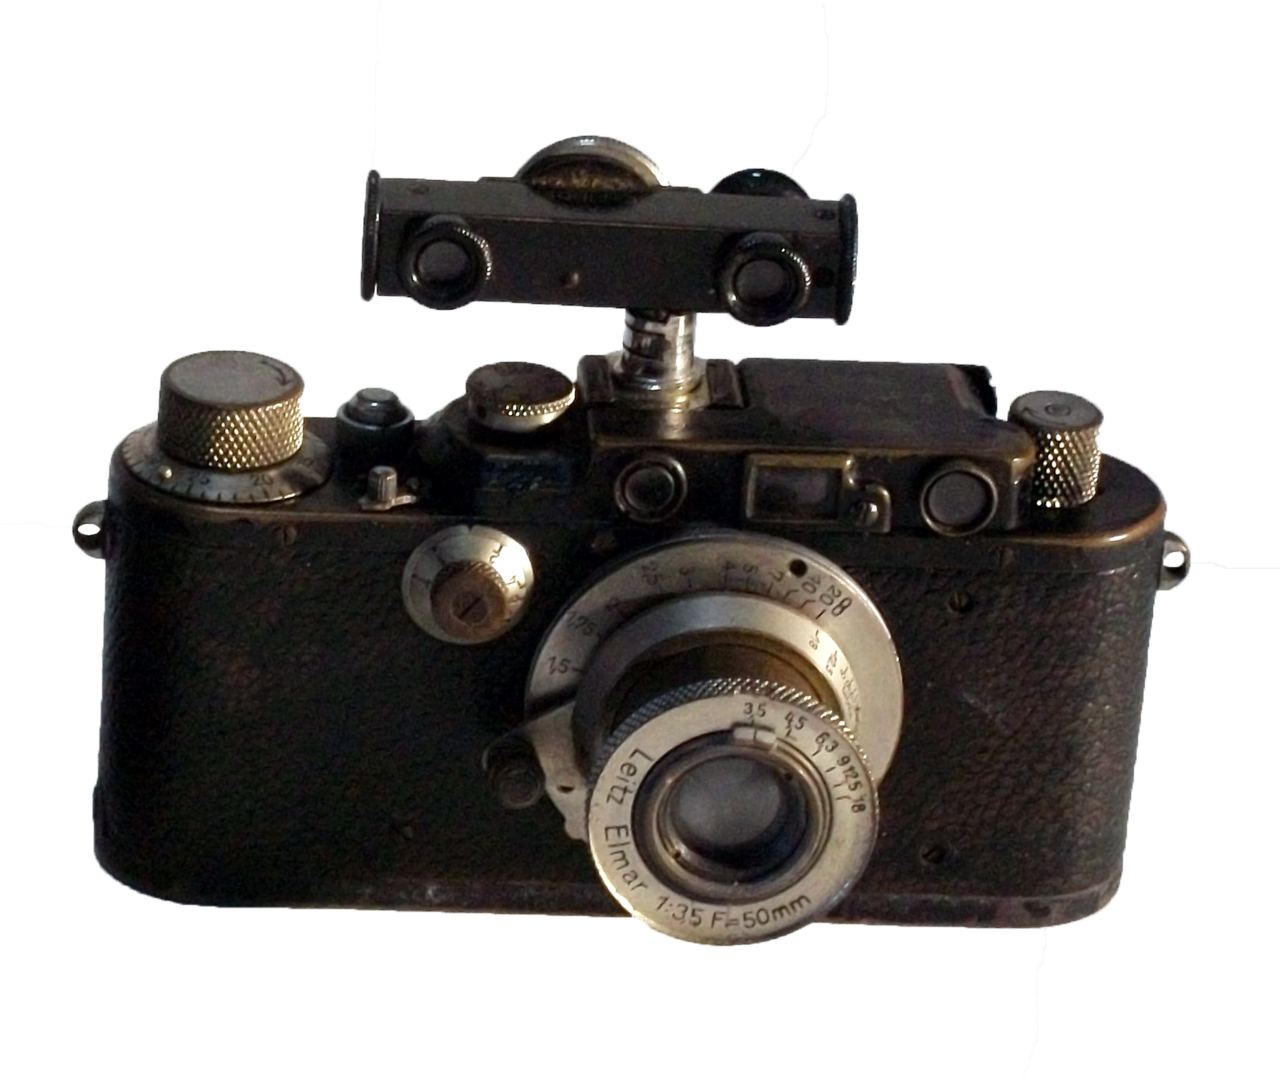 萊卡3型黑機身照相機